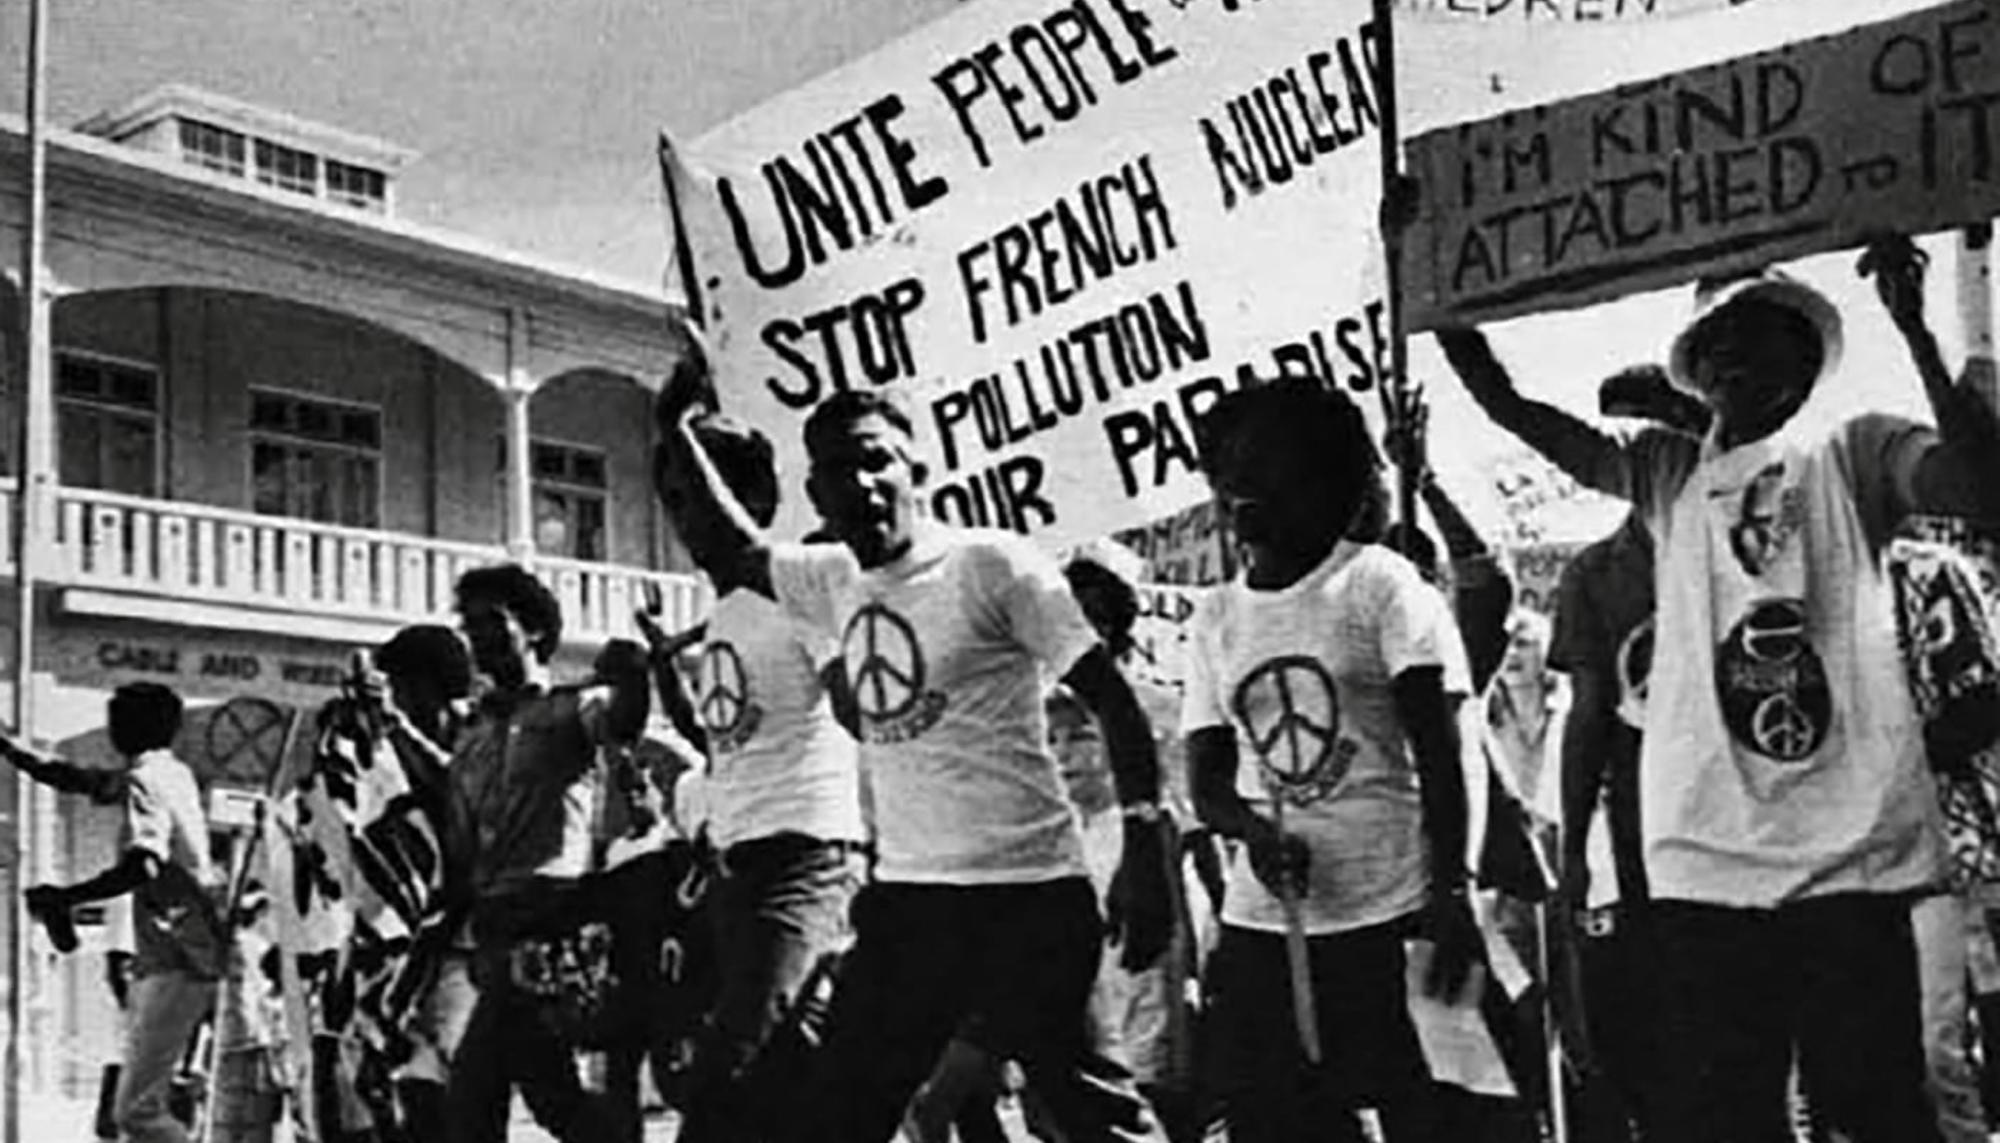 El comité contra las pruebas en Mururoa (ATOM) protesta en las calles de Suva (Fiyi) en la década de 1970. Fuente: Beyond Nuclear International